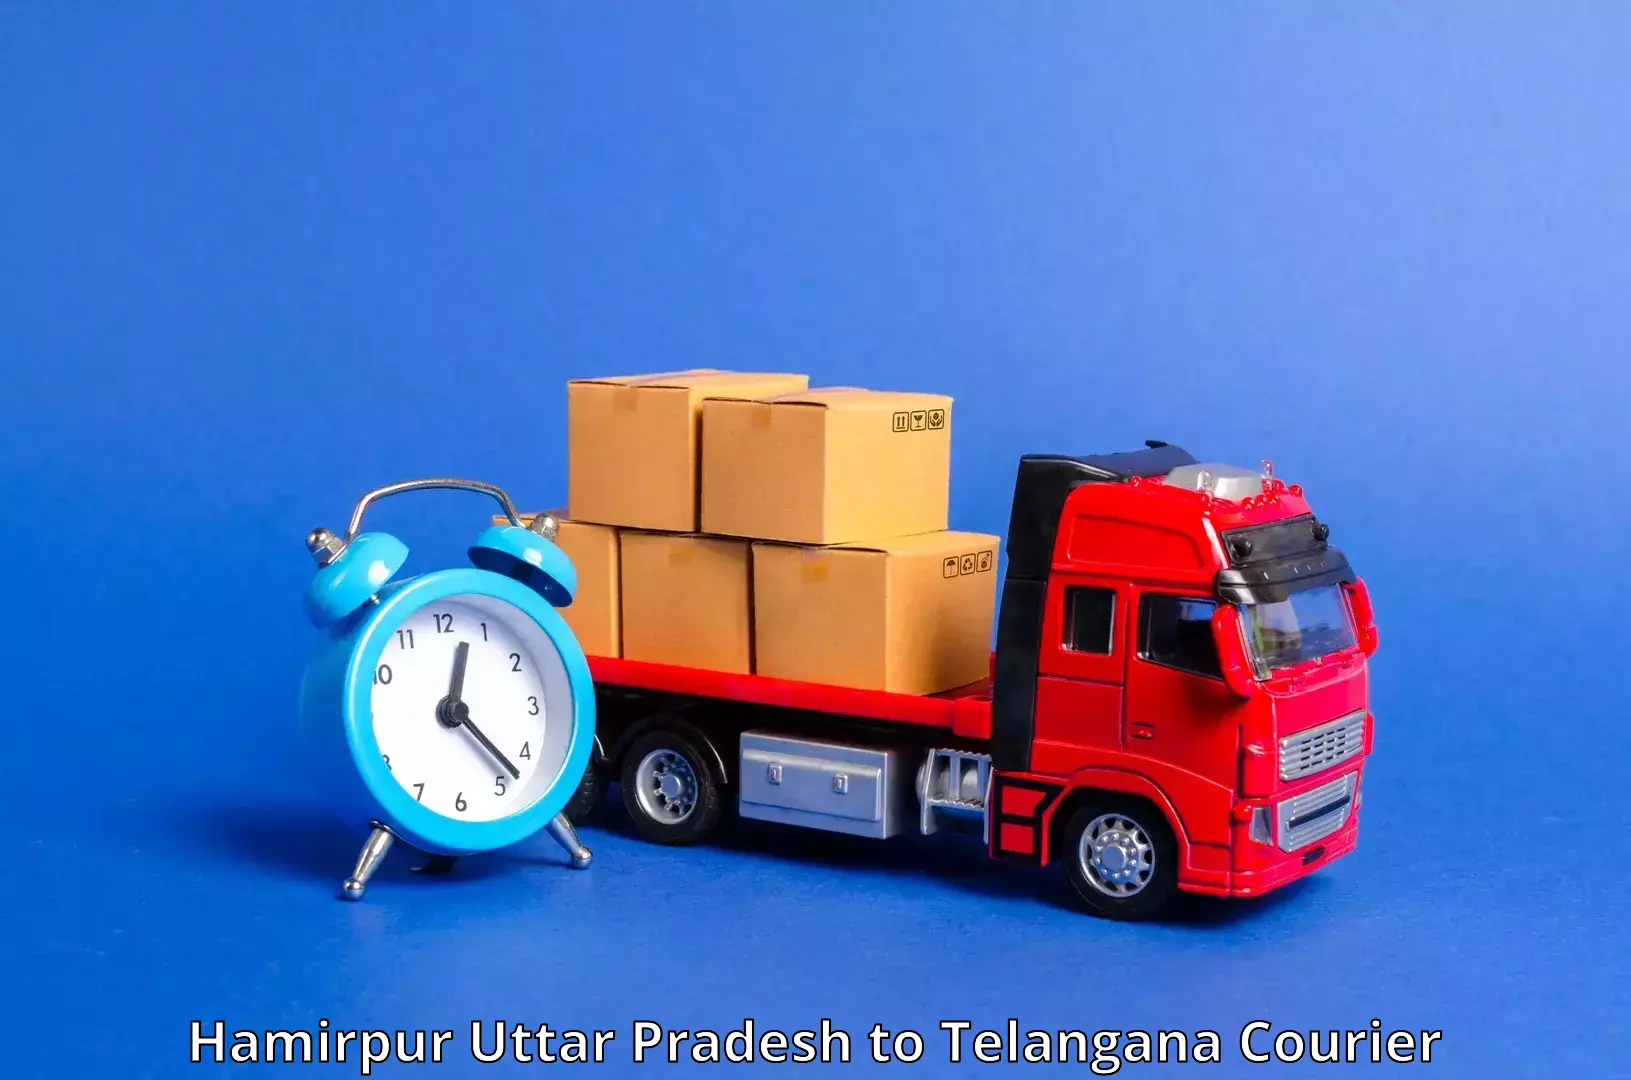 Domestic courier Hamirpur Uttar Pradesh to Telangana